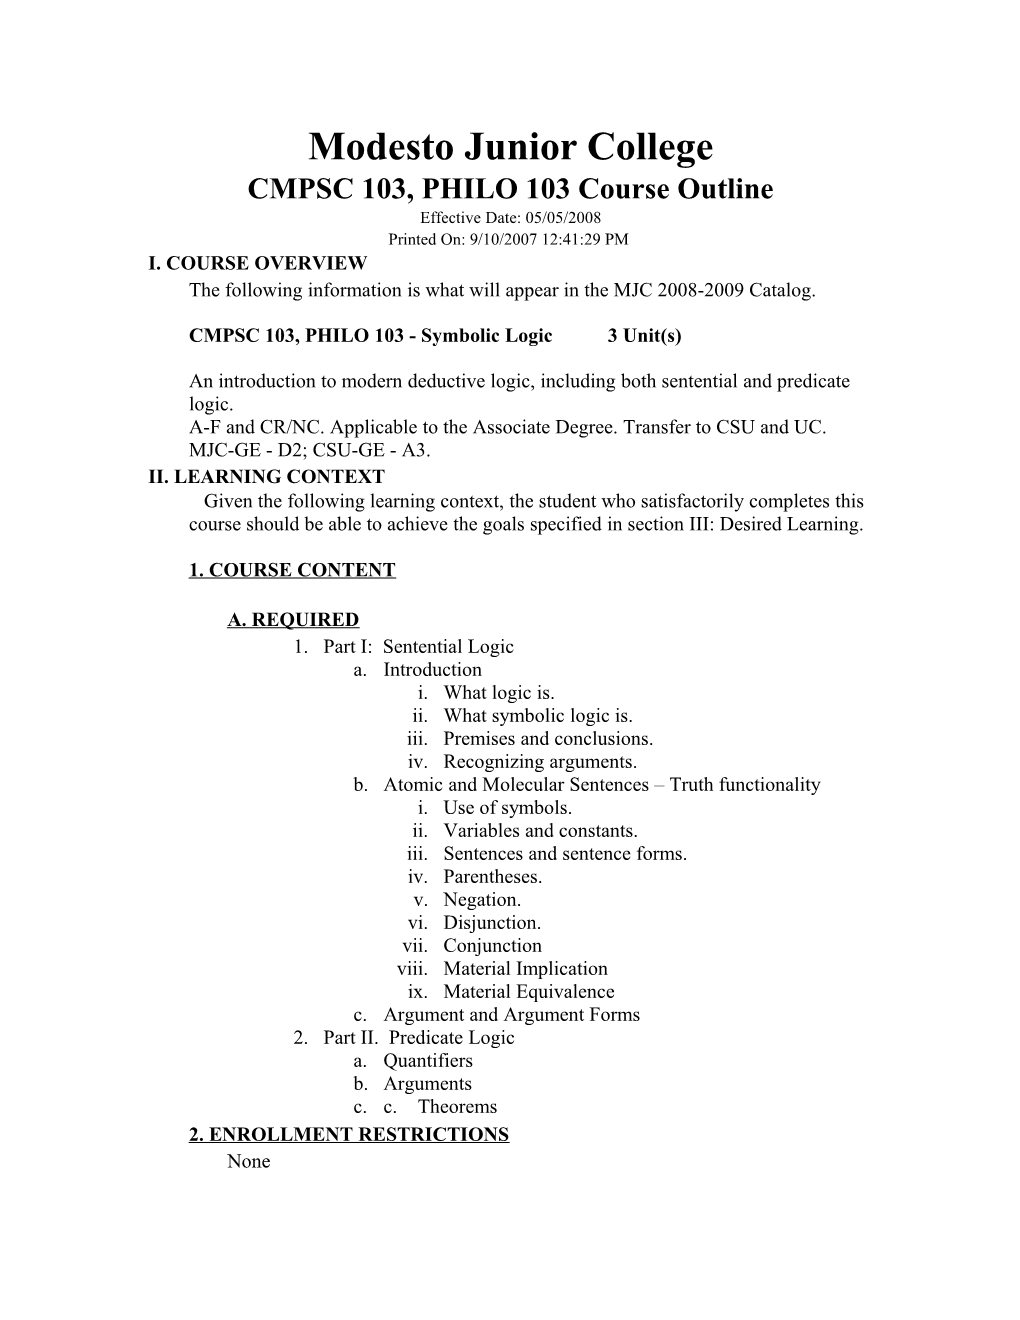 Curricuweb - CMPSC 103, PHILO 103